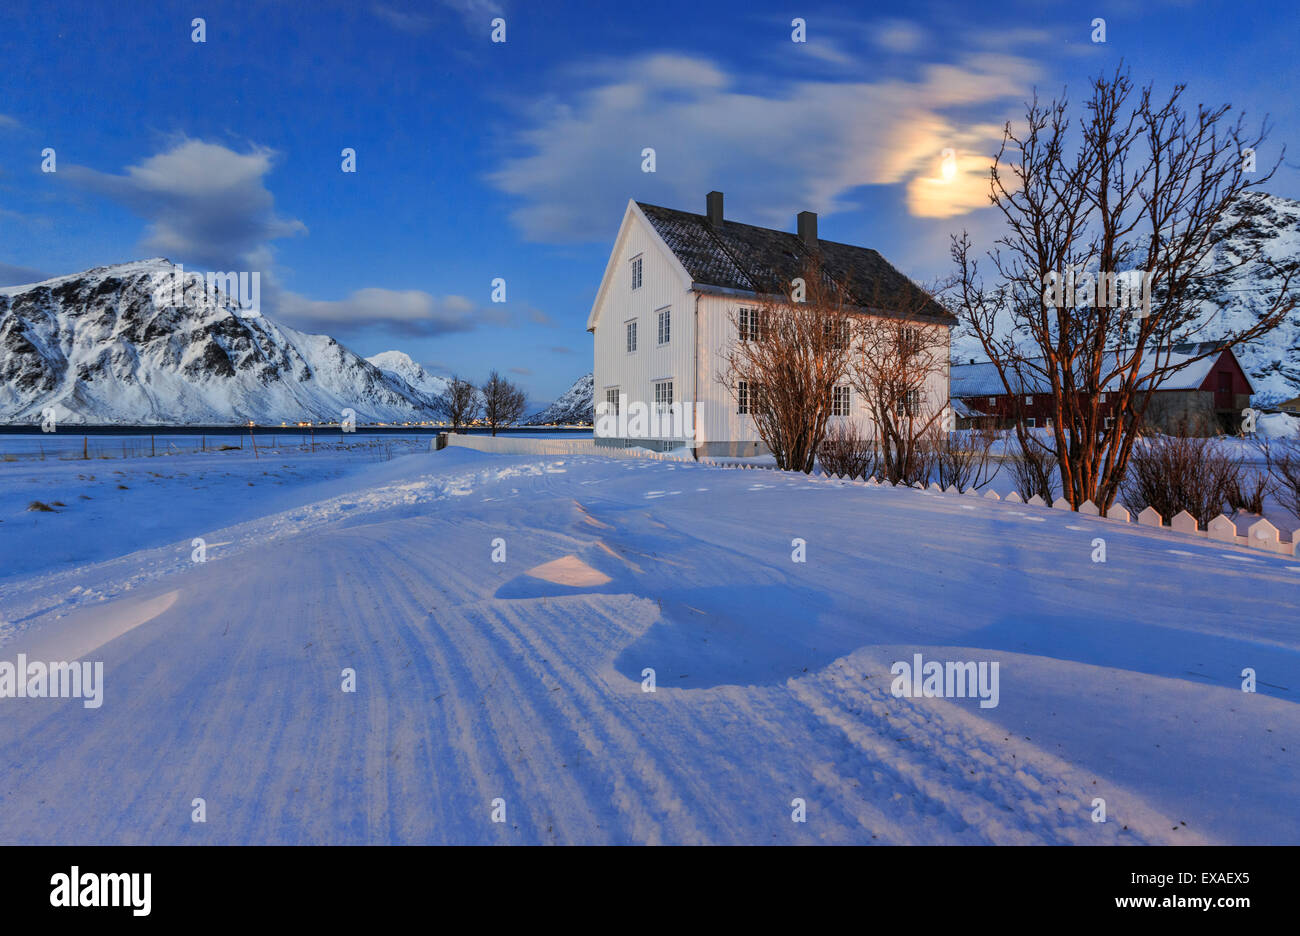 Maison typique entouré de neige sur une froide journée d'hiver au crépuscule, Flakstad, îles Lofoten, Norvège, Scandinavie, Europe Banque D'Images